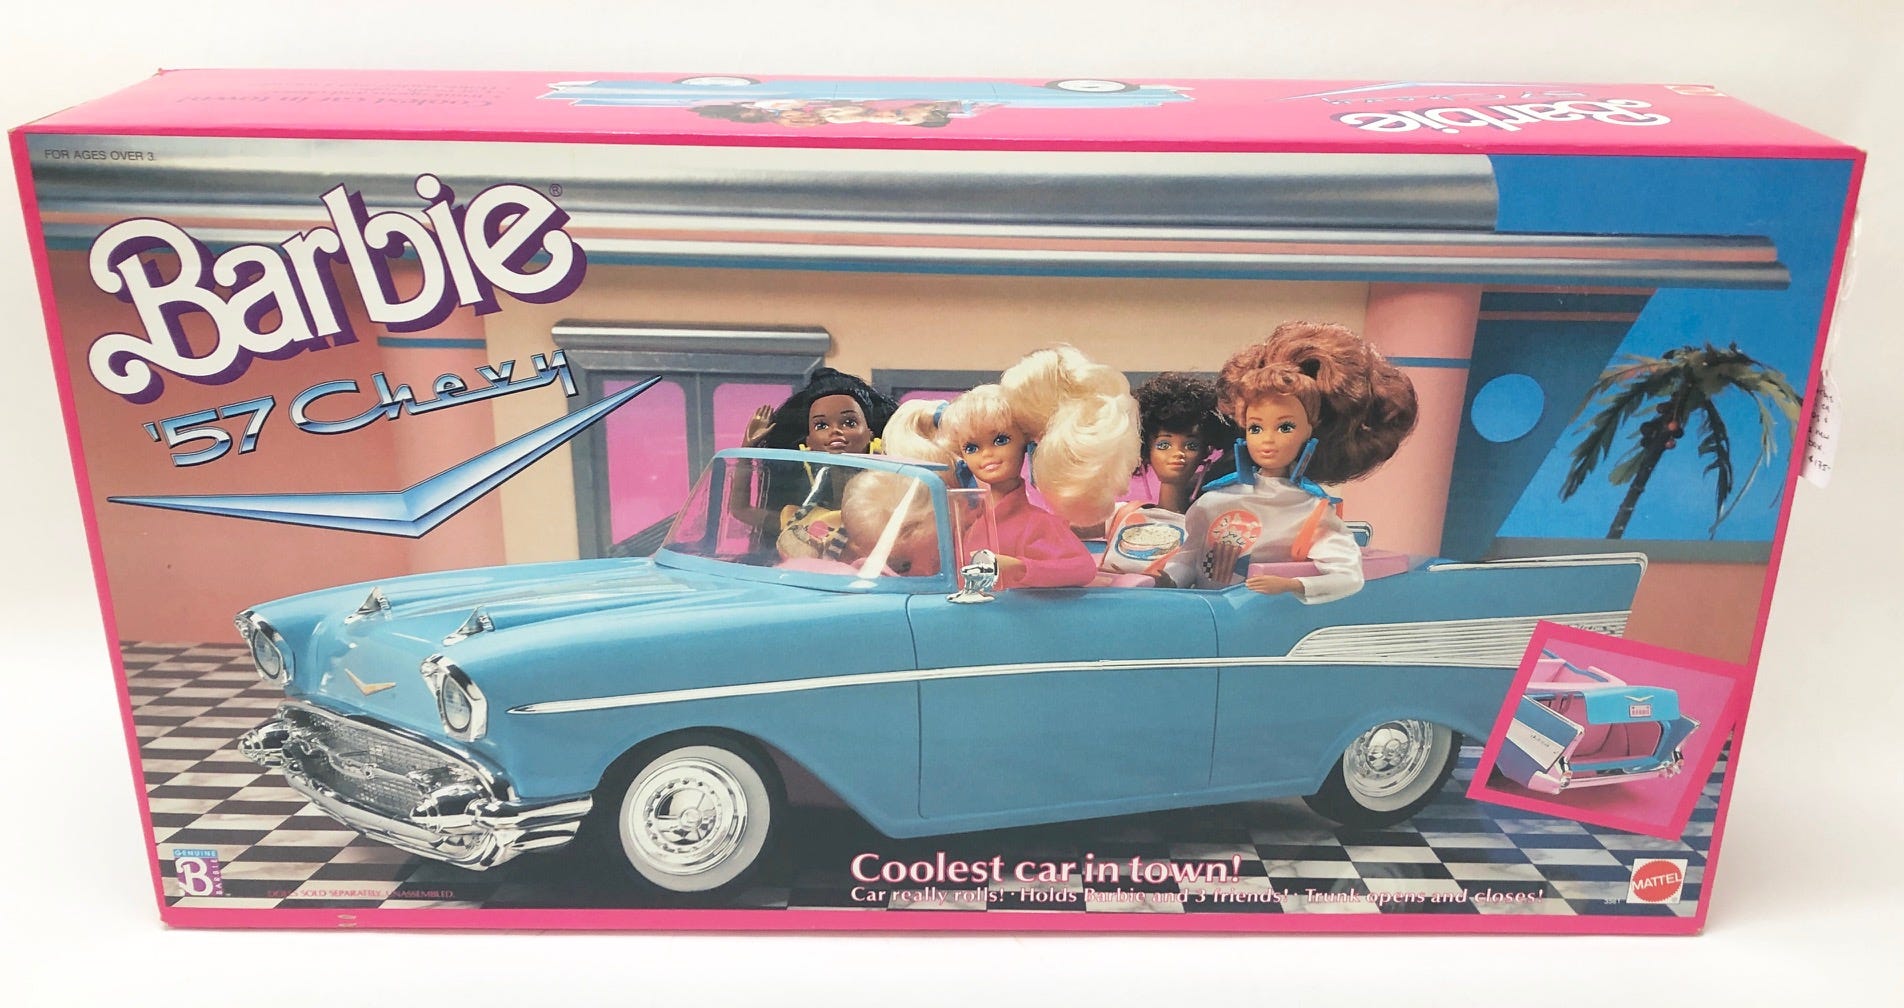 sell vintage barbie dolls